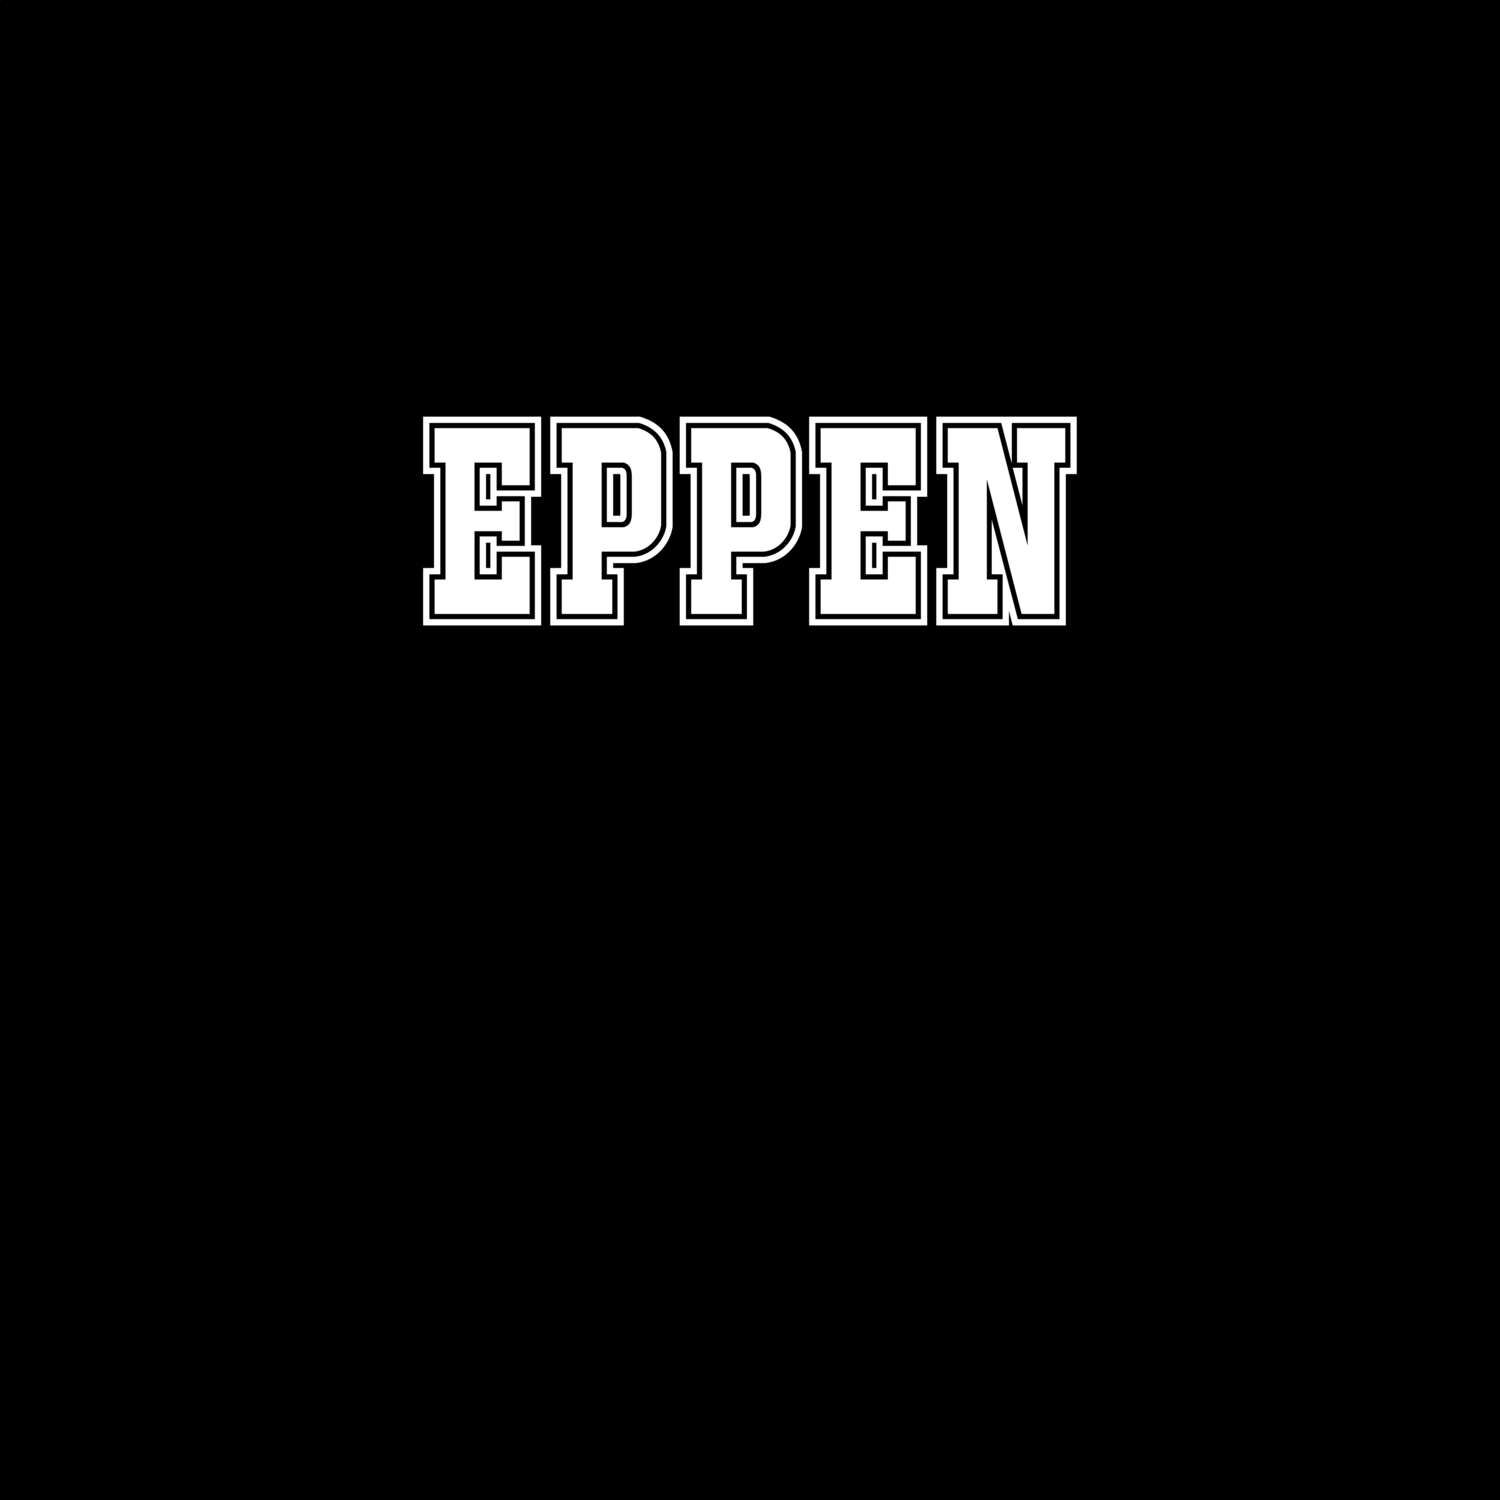 Eppen T-Shirt »Classic«